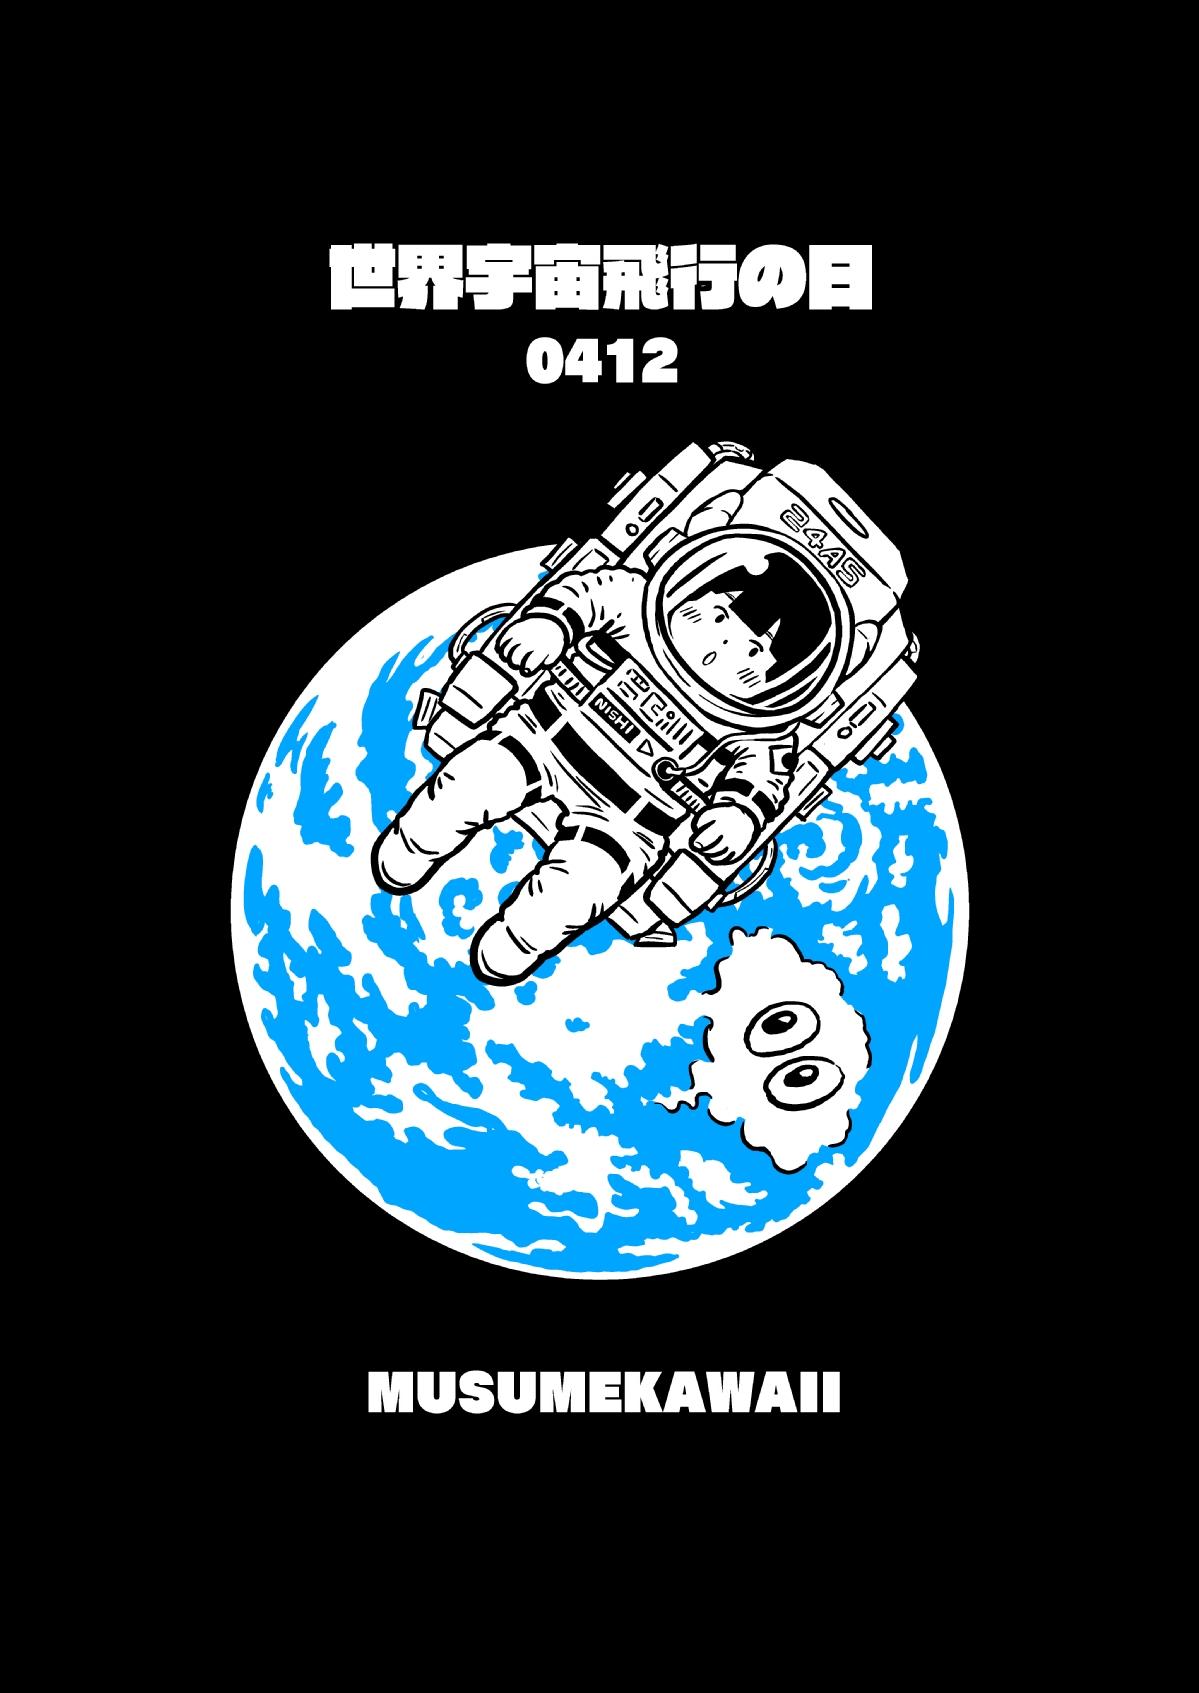 西アズナブル マンガ 親が老いる前に読みたい 家族のおかね15の話 発売中 Musumekawaii 日替わりイラスト毎日記念日シリーズ 4月12日は 世界宇宙飛行の日 地球は青かった の名言で有名なガガーリンが搭乗した世界初の有人宇宙衛星船ボストーク